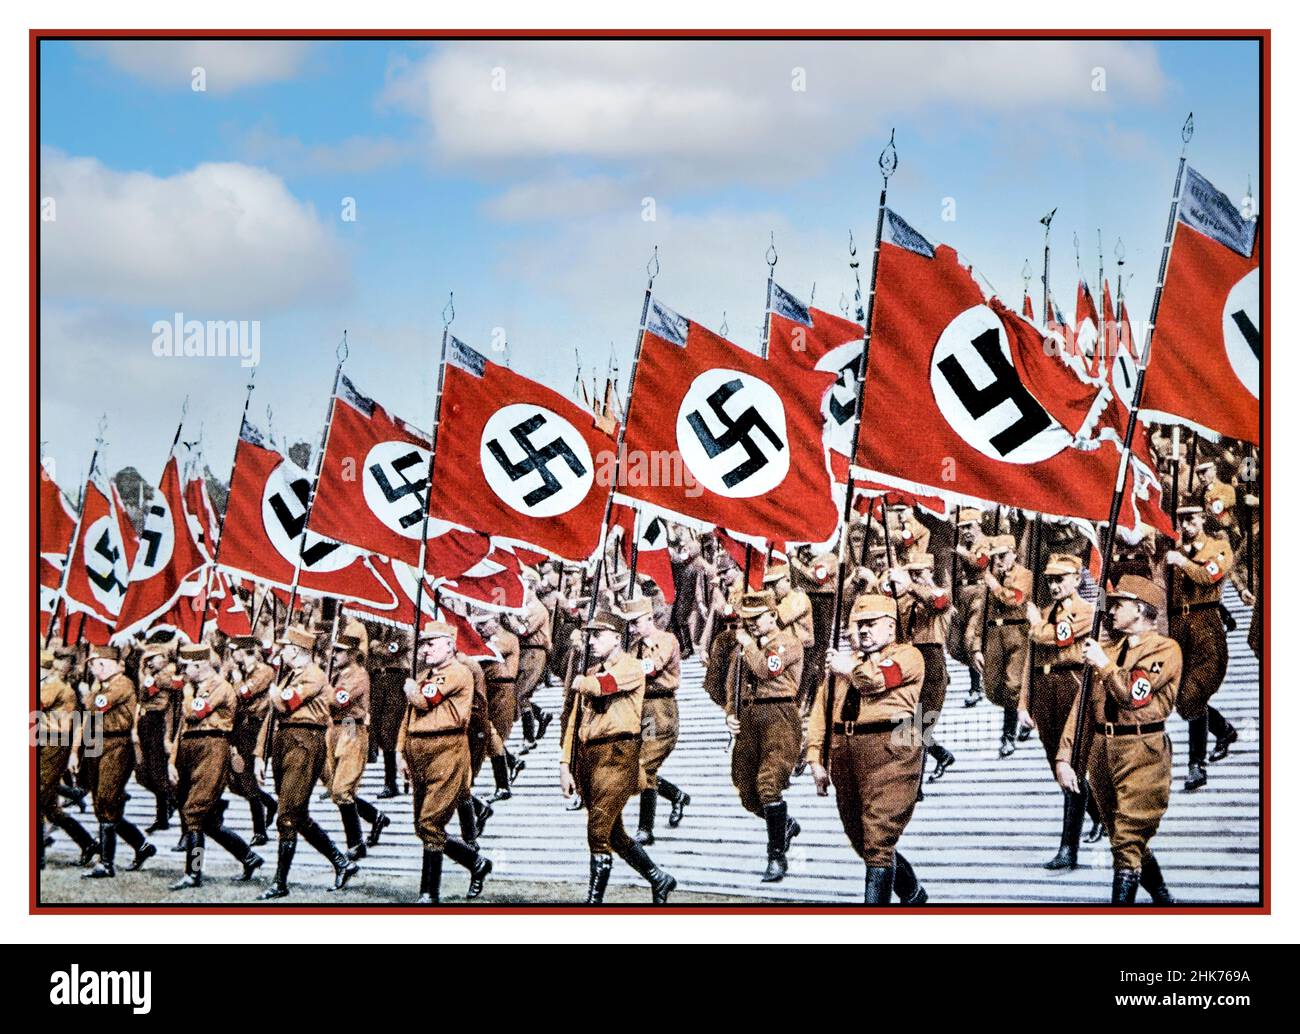 Sturmabteilung SA-Truppen Vintage-Propaganda Nazi-Deutsche Sturmabteilung SA-Truppen marschieren mit Nazi-Swastika-Flaggen auf der Nazi-Kundgebung Nürnberg Deutschland 1933. Verwendet als Titelbild für den Propagandafilm Triumph des Willens (Triumph des Willens), einen Film von Leni Riefenstahl aus dem Jahr 1935. Stockfoto